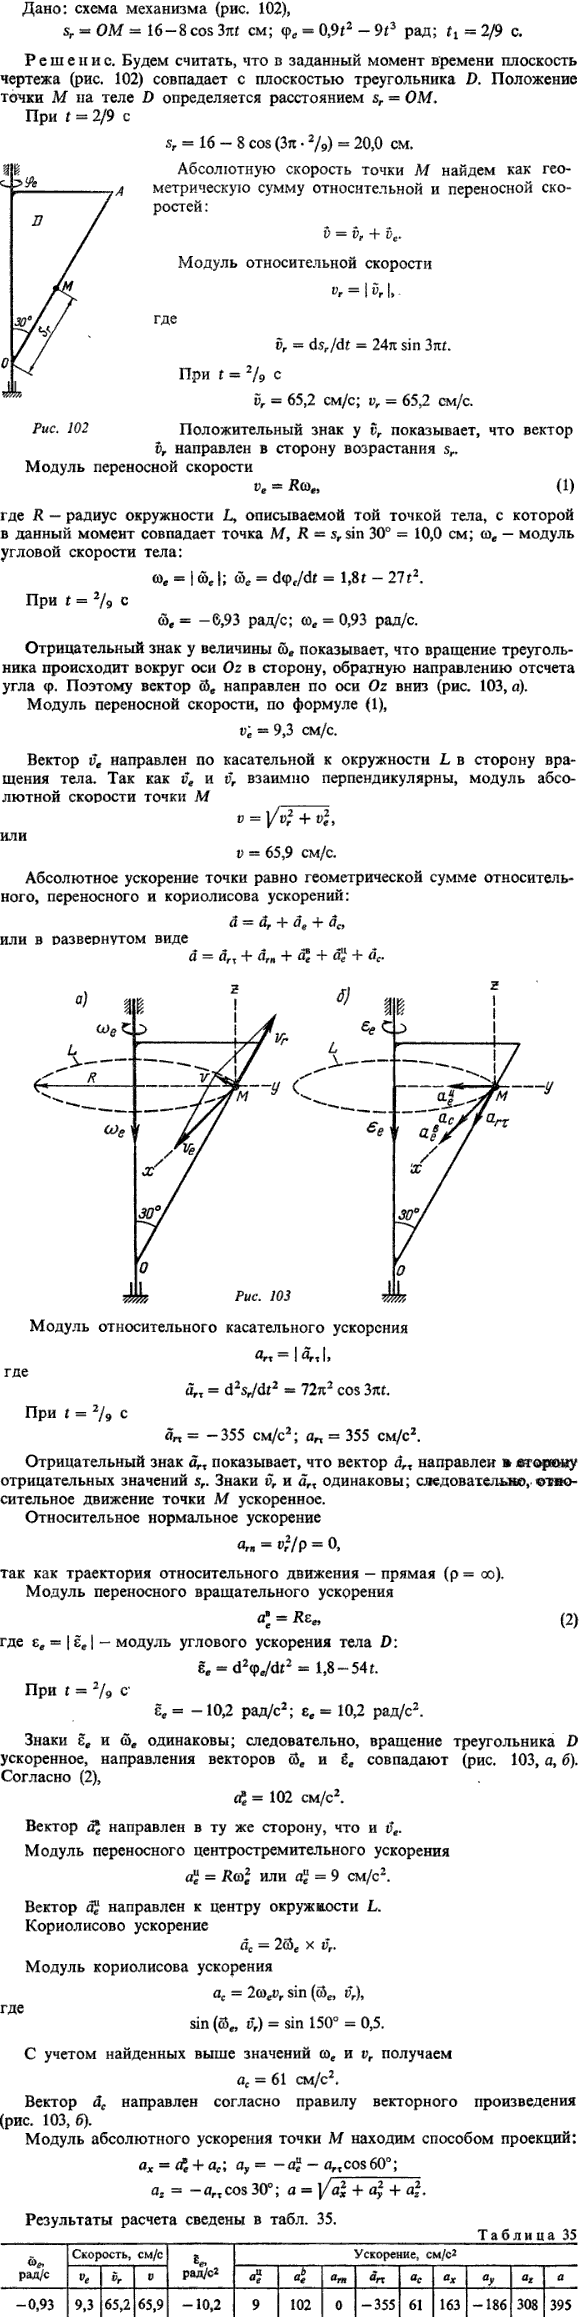 Пример выполнения задания К7 Яблонский. Дана схема механизма, sr =ОМ= 16-8co..., Задача 14482, Теоретическая механика